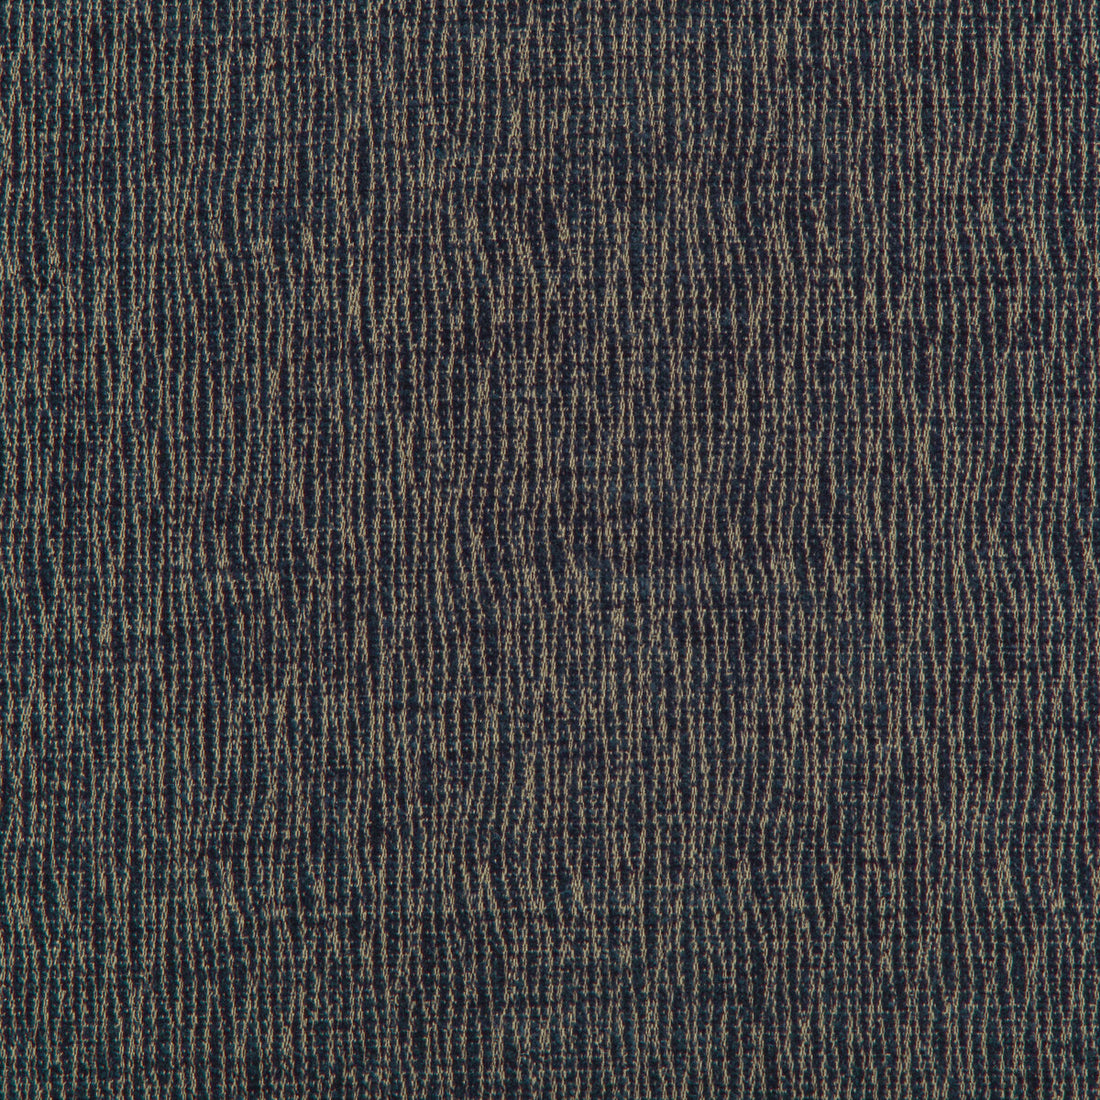 Kravet Basics fabric in 33163-516 color - pattern 33163.516.0 - by Kravet Basics in the Kravet Colors collection